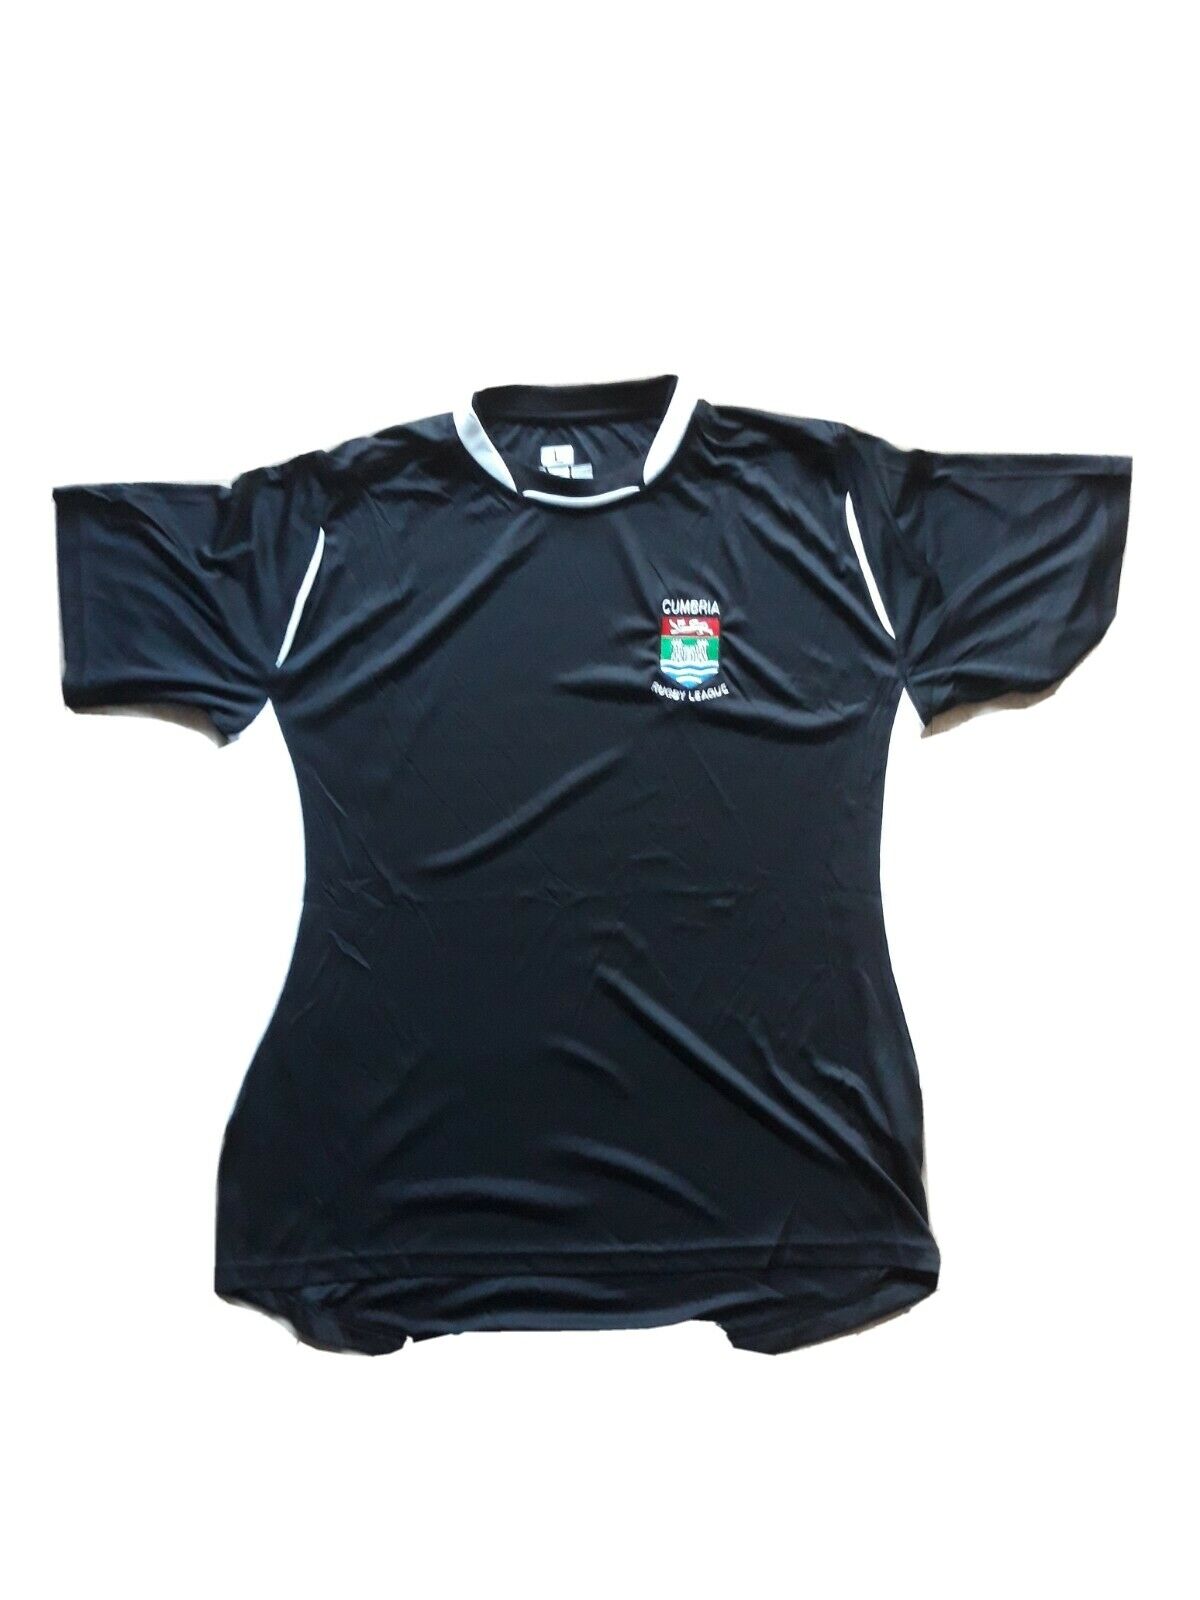 Cumbria Rugby League Training Tee Shirt